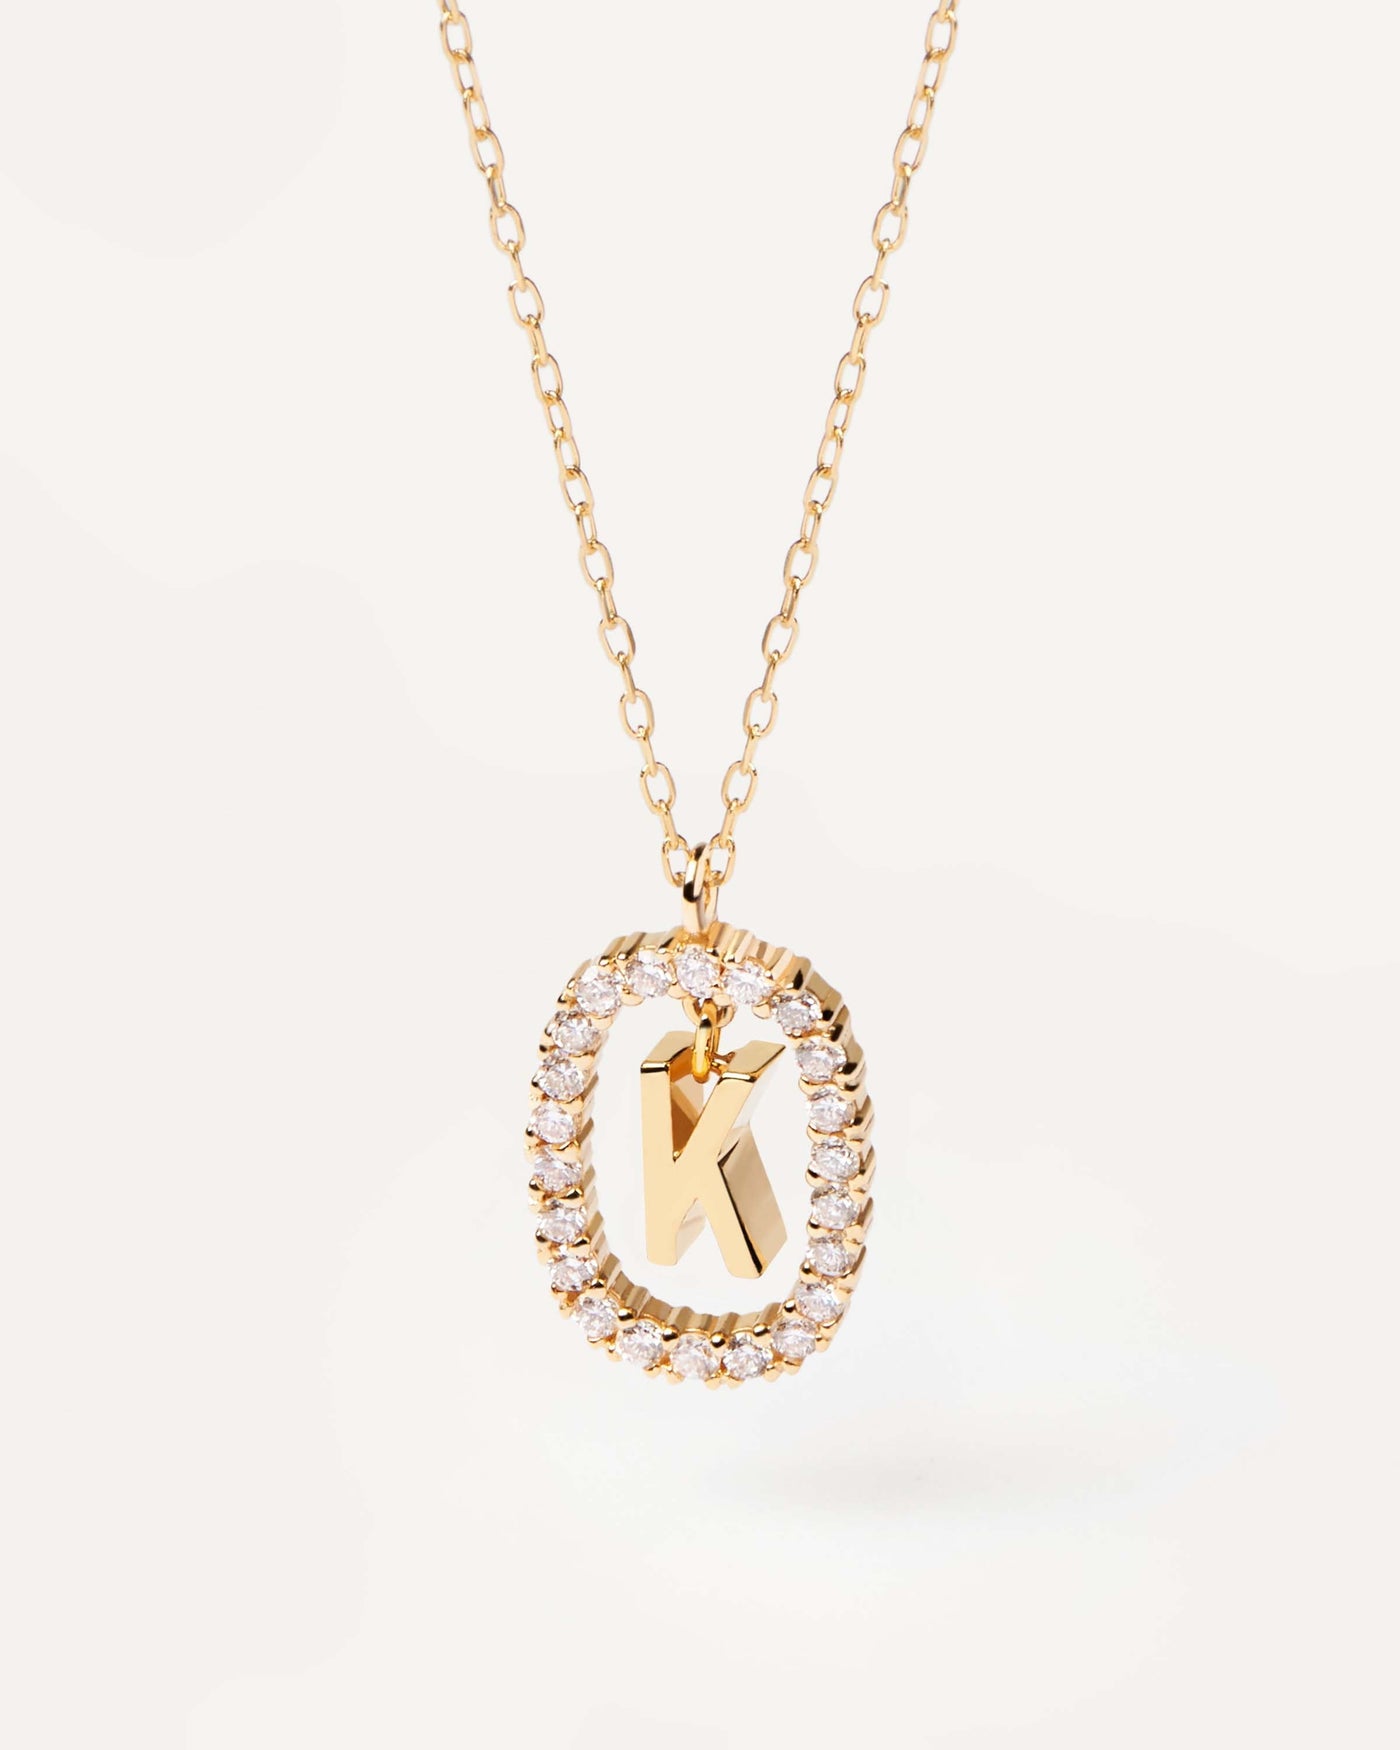 GoldHalskette mit Diamanten Buchstabe K. Erstk-Halskette in soliden Gelbgold, umkreist von 0,33 Karat-Labor-Diamanten. Erhalten Sie die neuesten Produkte von PDPAOLA. Geben Sie Ihre Bestellung sicher auf und erhalten Sie diesen Bestseller.